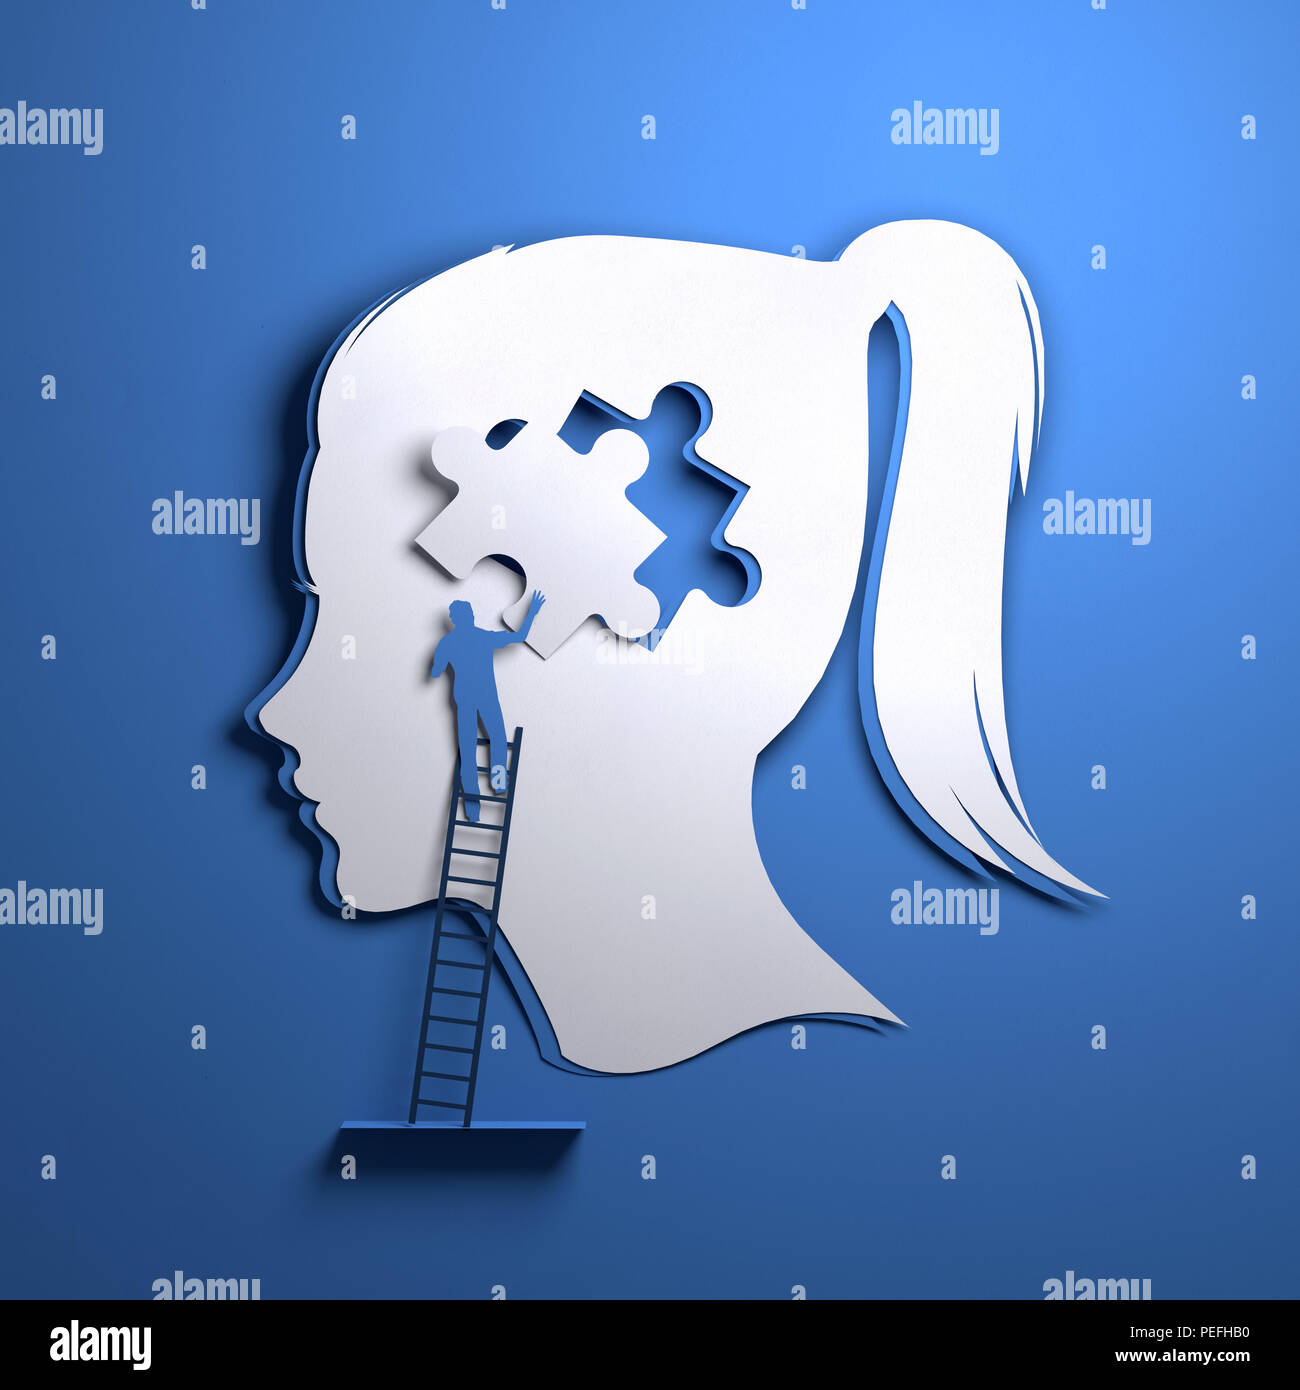 Papier plié origami. La silhouette d'une tête de femme avec une personne l'ajout d'une pièce du puzzle. Mindfulness conceptuel 3D illustration. Banque D'Images